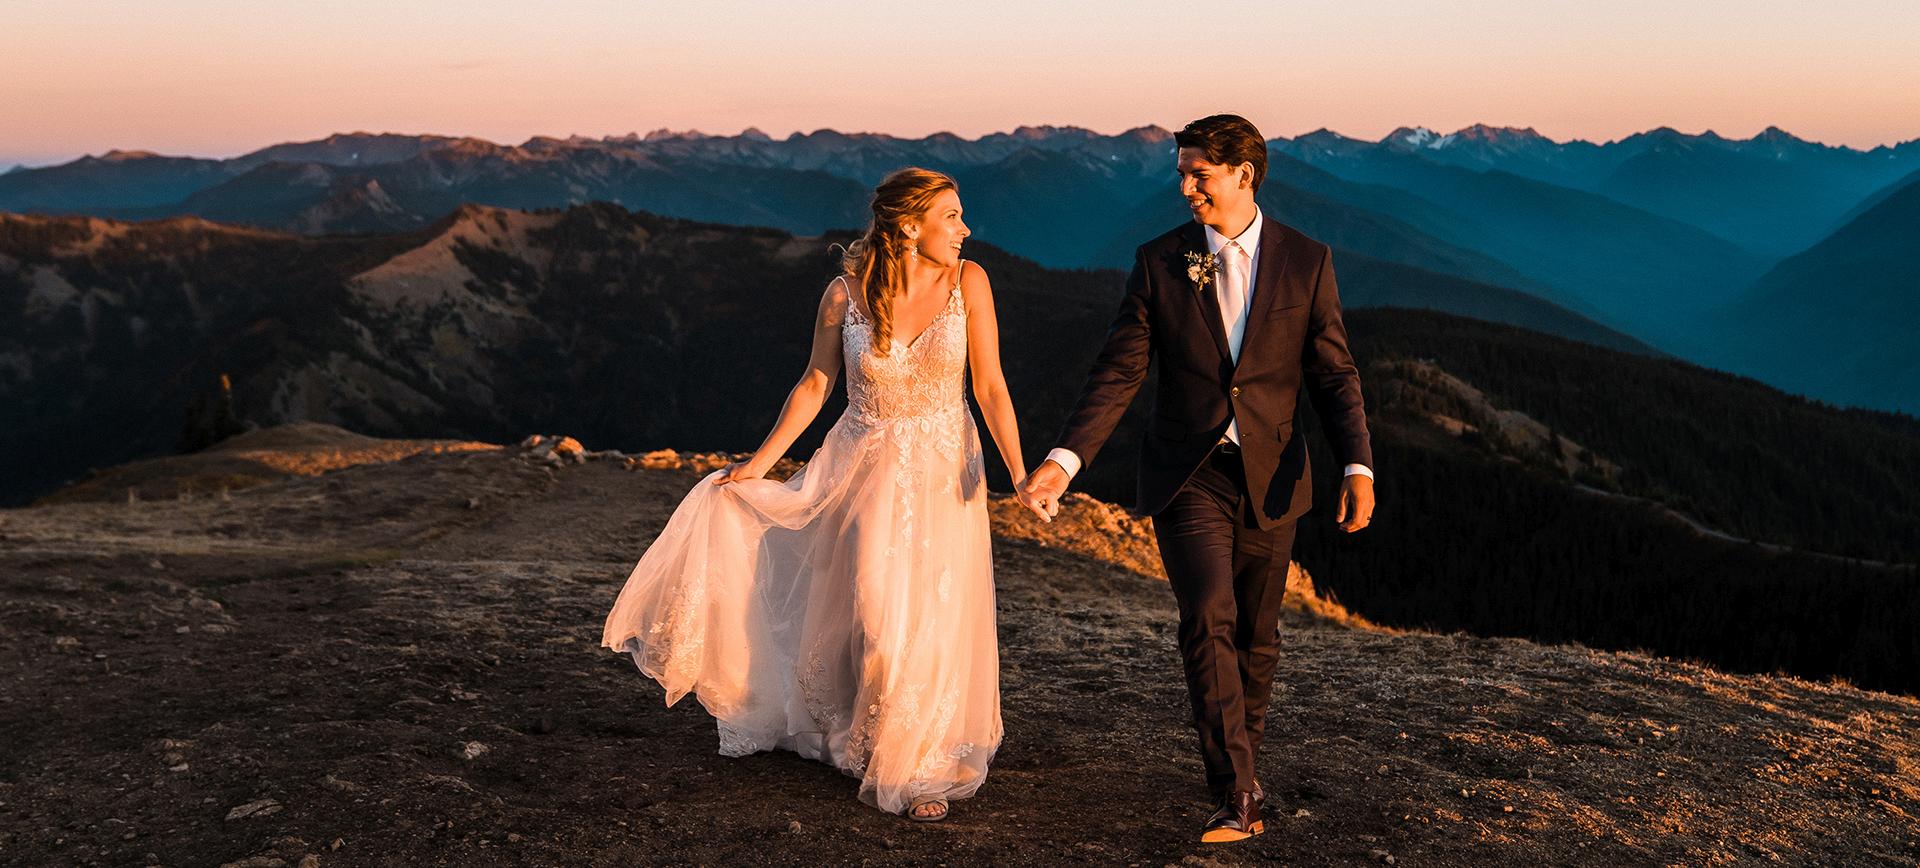 olympic national park elopement washington sunset hiking wedding